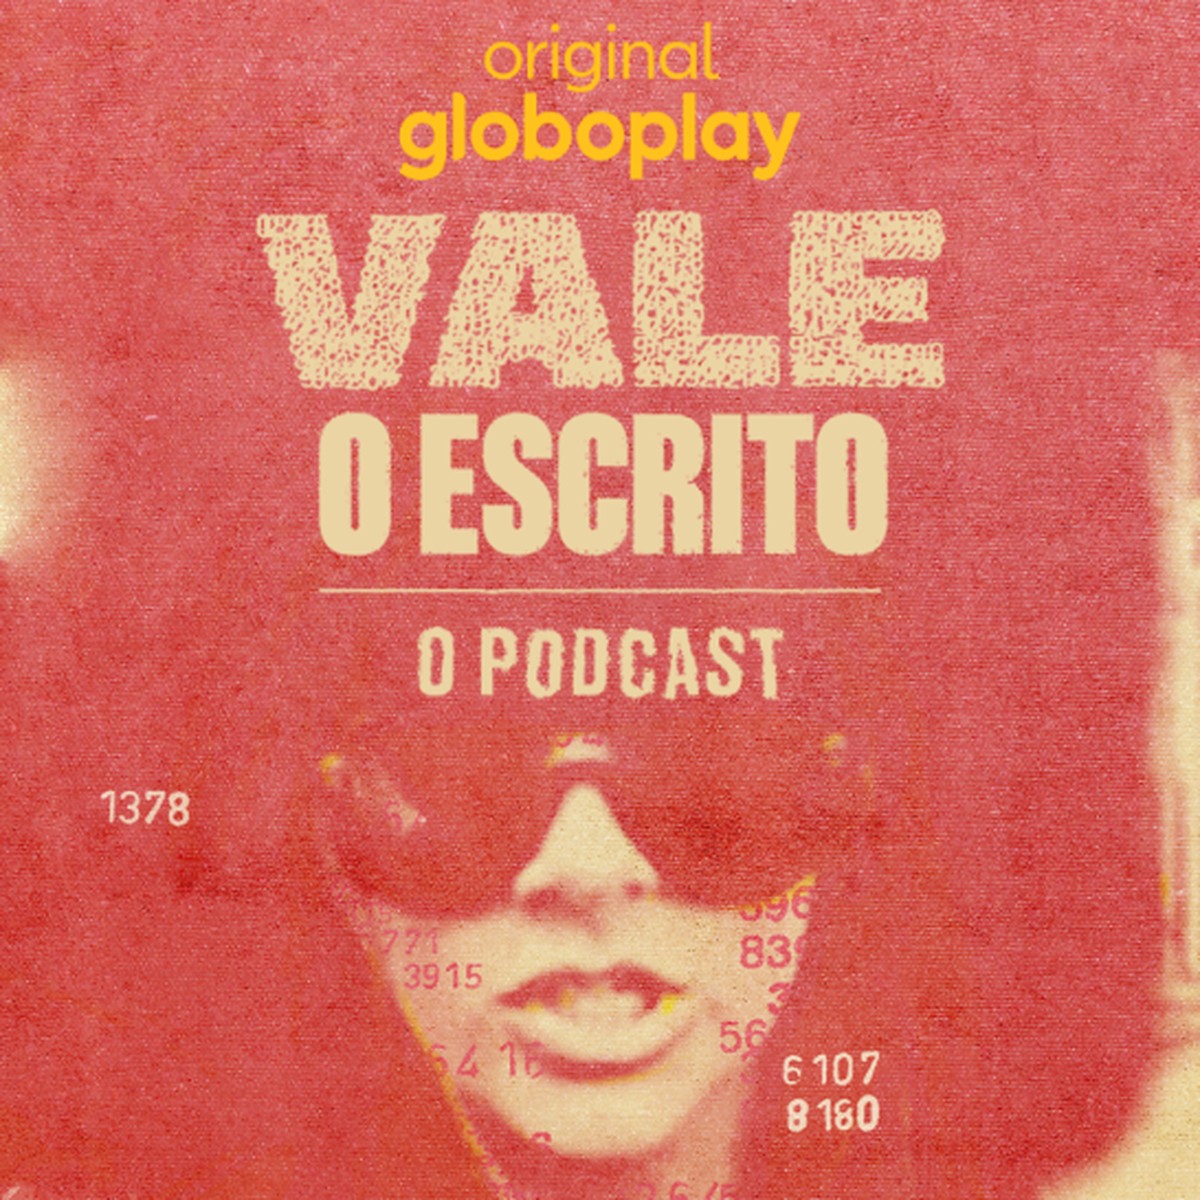 Vale o Escrito', série documental do Globoplay, mergulha na guerra do jogo  do bicho no Rio de Janeiro, TV e Séries